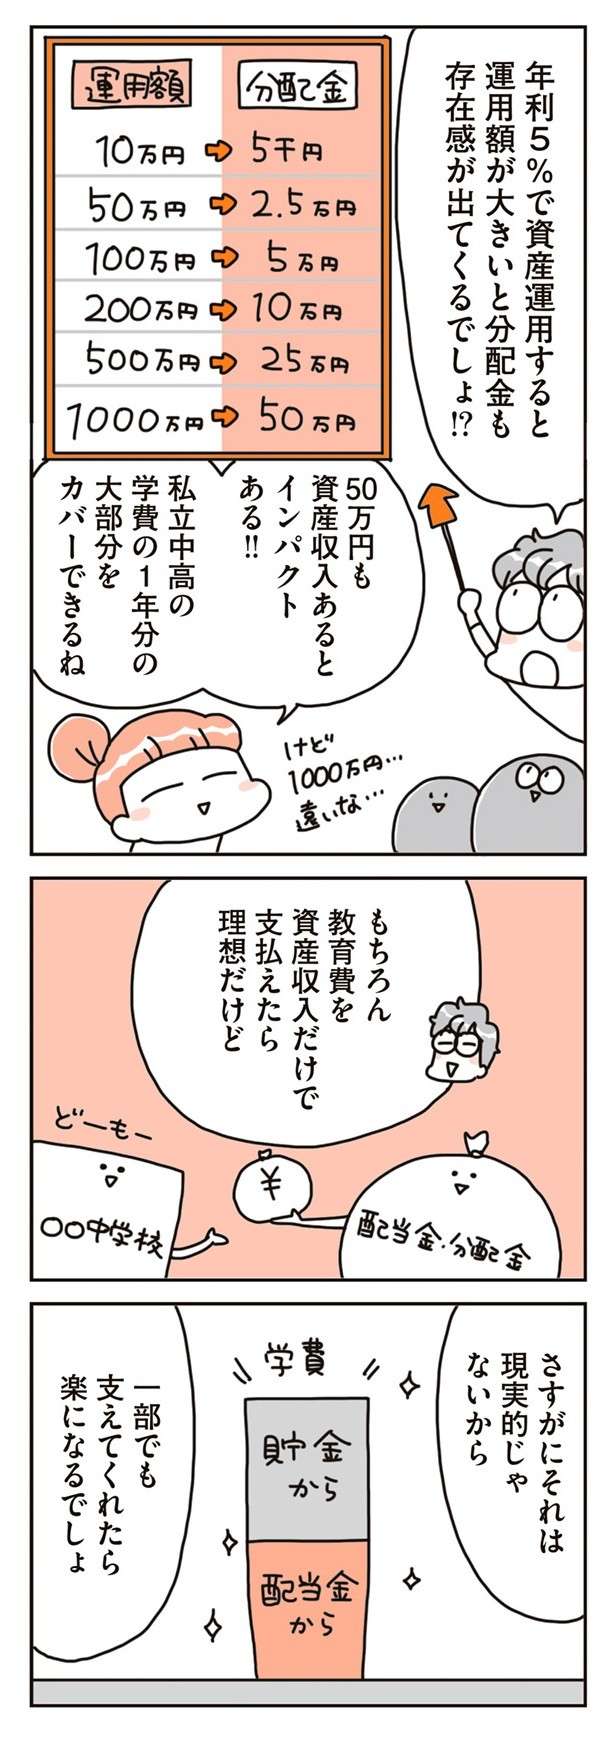 chintaika_mochiieka18-9.jpg